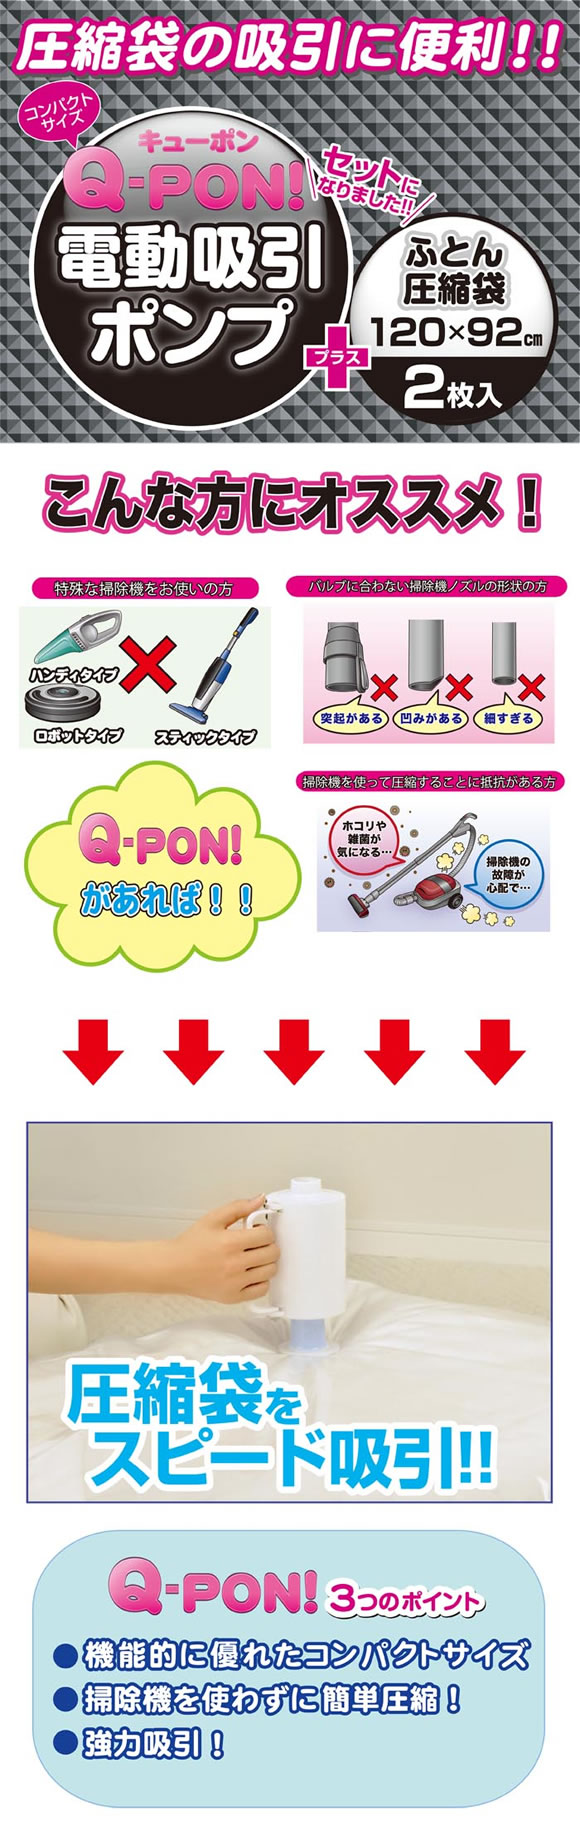 BIOブランド商品のオリエント / Q-PON!セット(ふとん用2P)